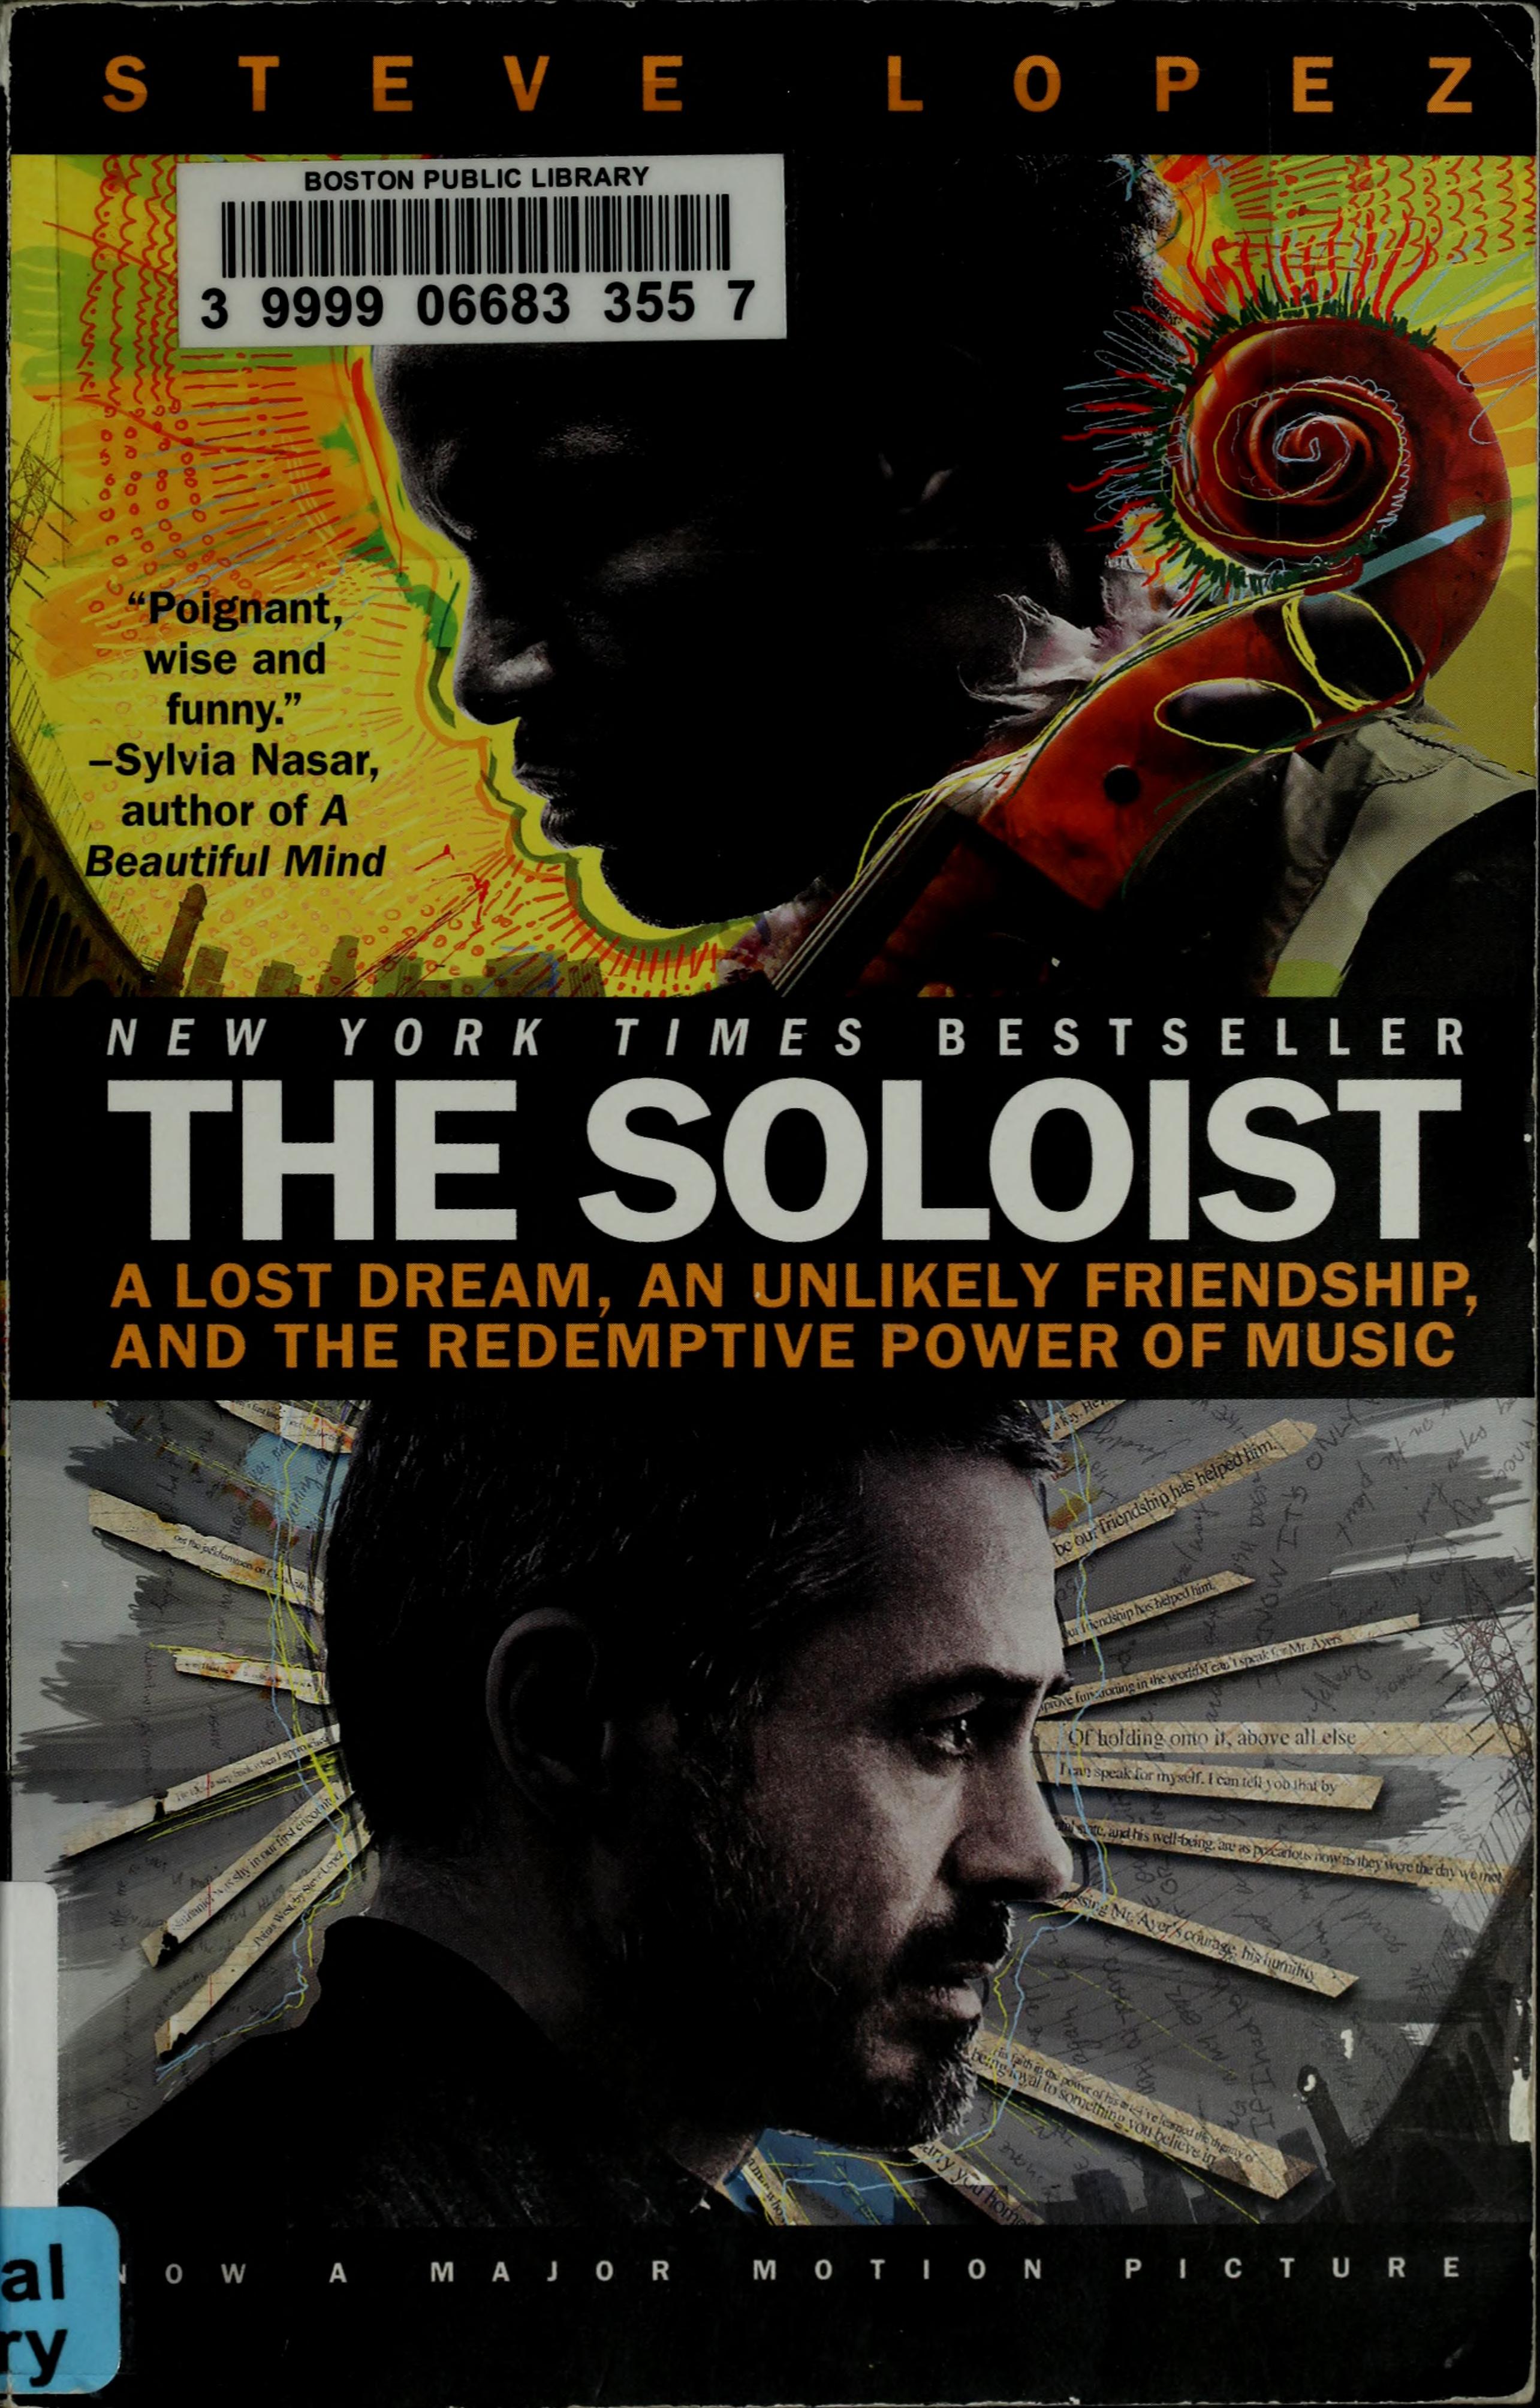 The Soloist by Steve Lopez - Penguin Books Australia